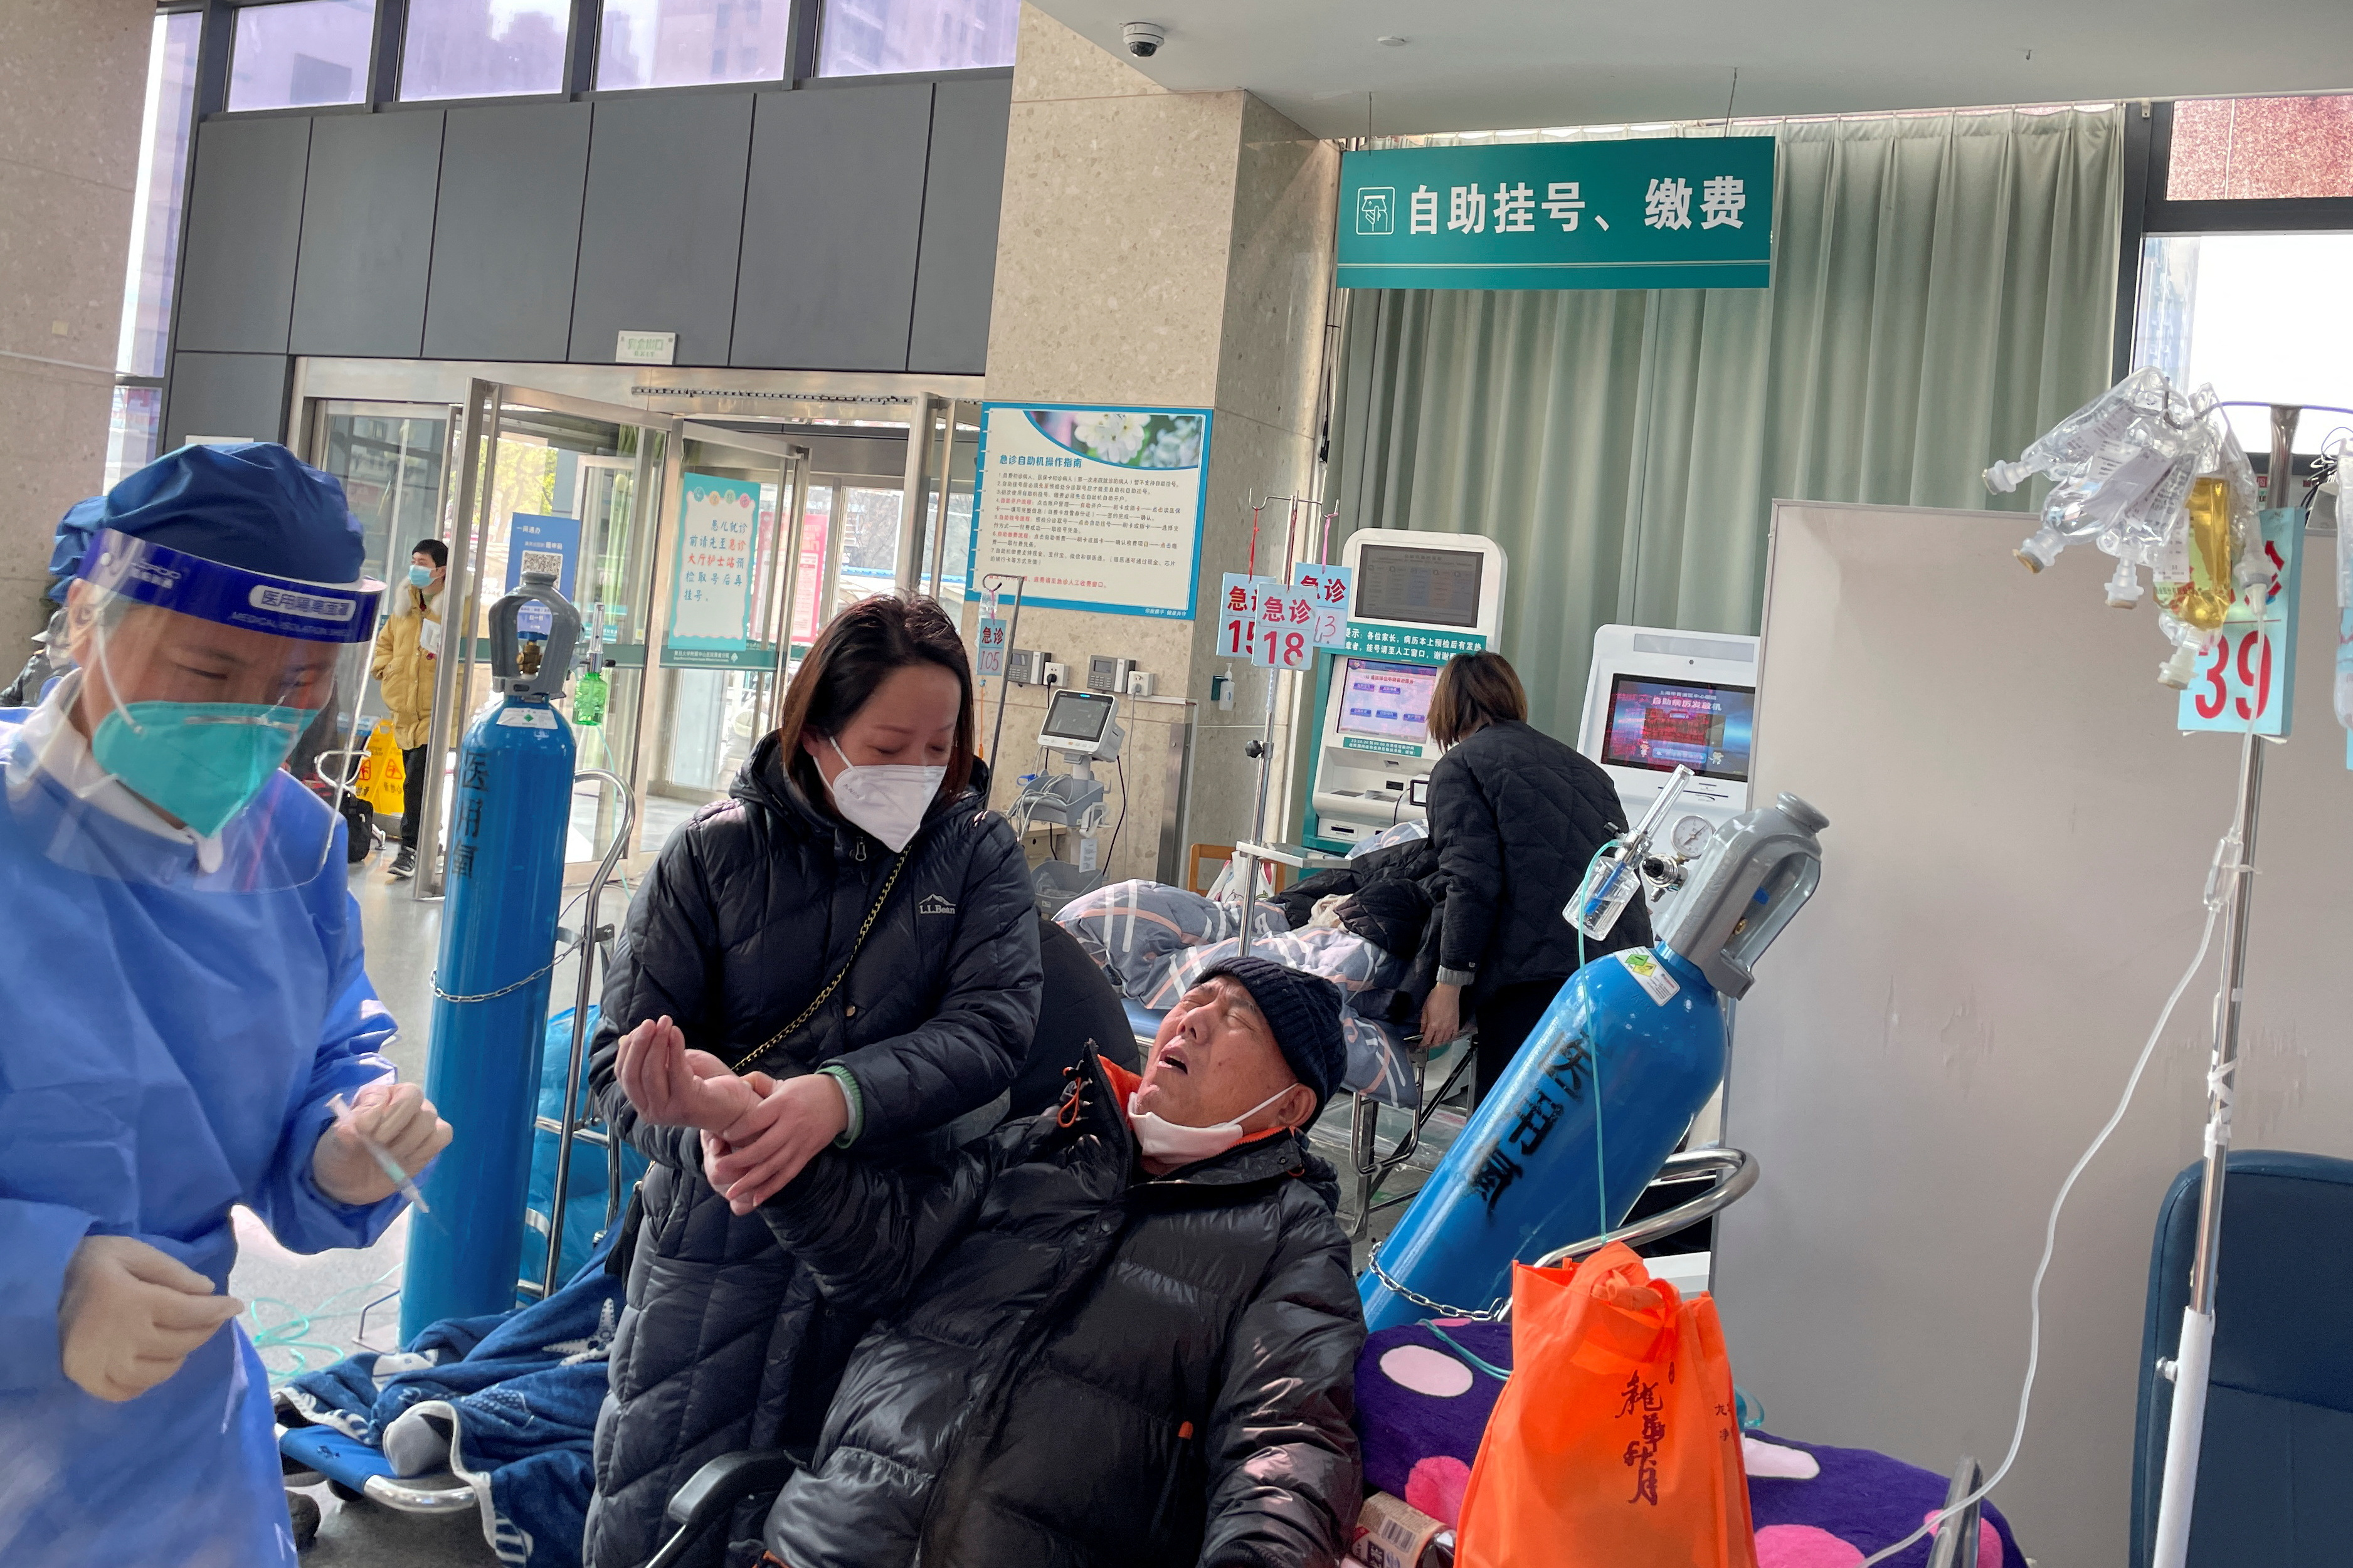 Un paciente recibe tratamiento en el departamento de emergencias de un hospital, en medio del brote de la enfermedad por coronavirus (COVID-19) en China
